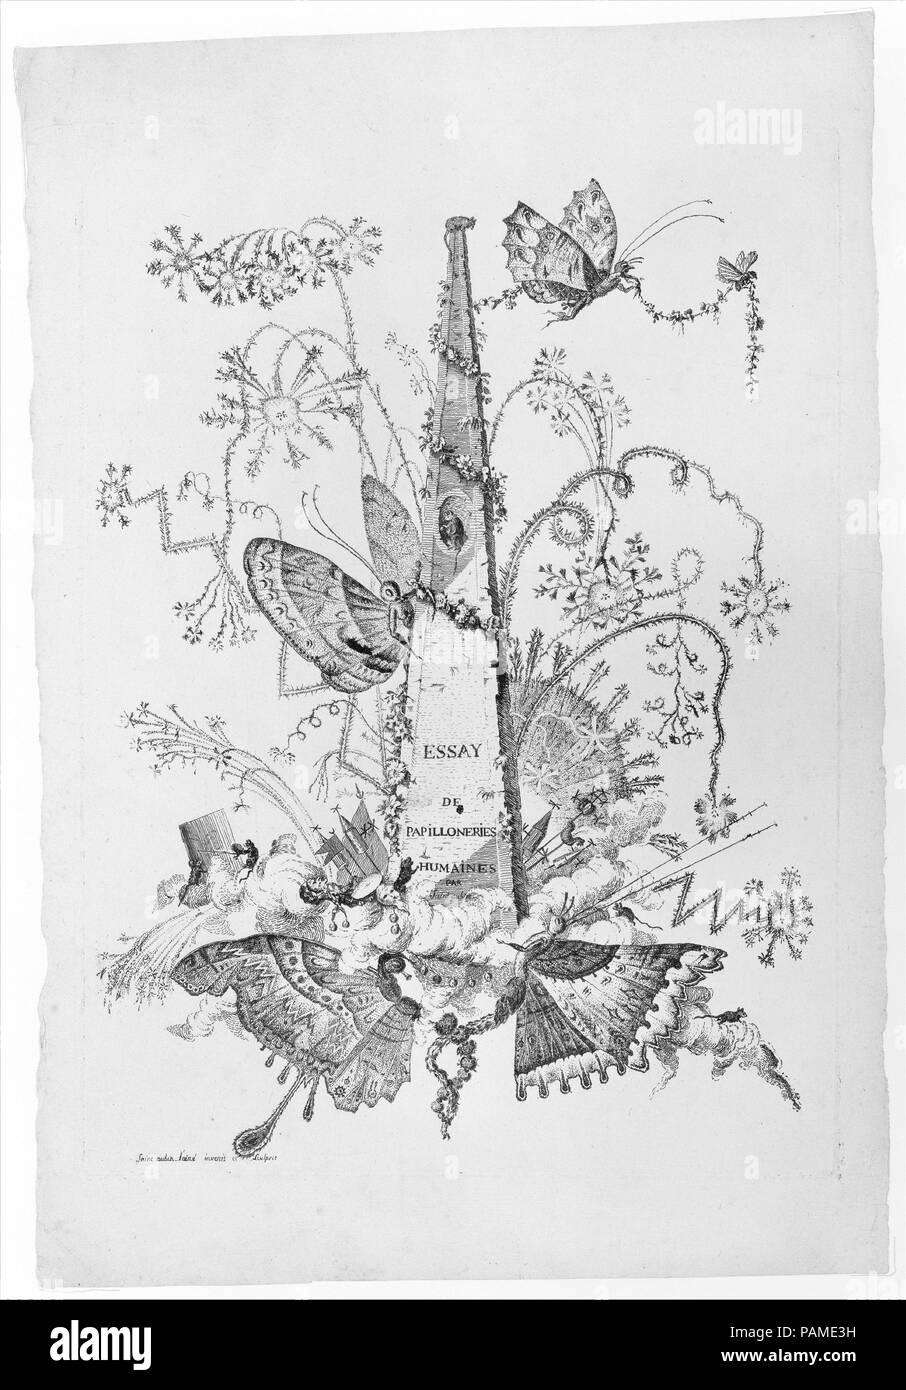 Title page from Essai de Papilloneries Humaines par Saint Aubin. Artist: Charles Germain de Saint-Aubin (French, Paris 1721-1786 Paris). Dimensions: plate: 12 13/16 x 9 5/16 in. (32.5 x 23.7 cm)  sheet: 15 5/8 x 10 9/16 in. (39.7 x 26.8 cm). Date: ca. 1756-60. Museum: Metropolitan Museum of Art, New York, USA. Stock Photo